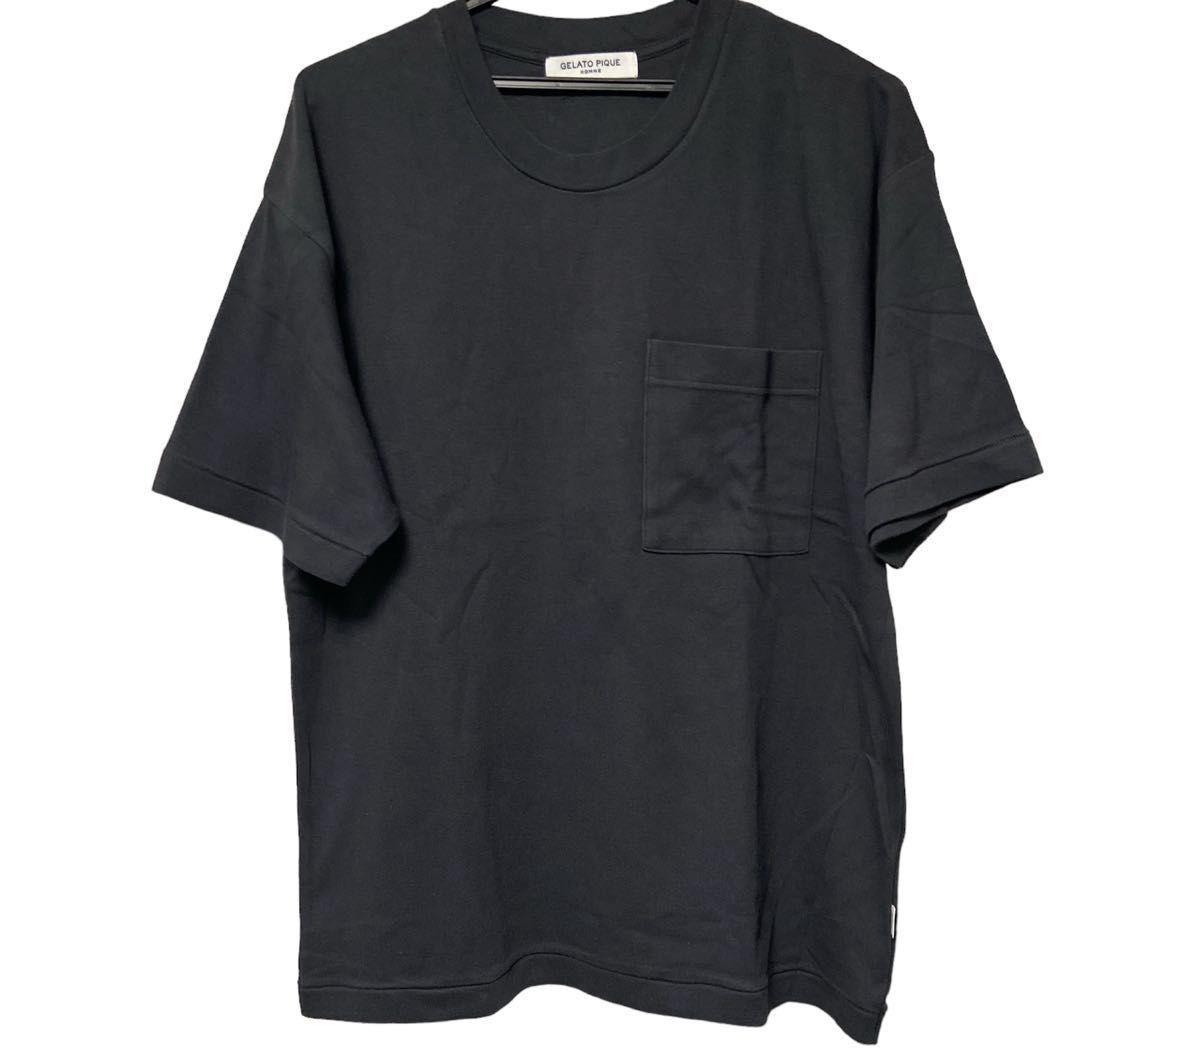 ジェラートピケオム Tシャツ パーカー ロングパンツ セットアップ 上下セット シンプル 3点セット 